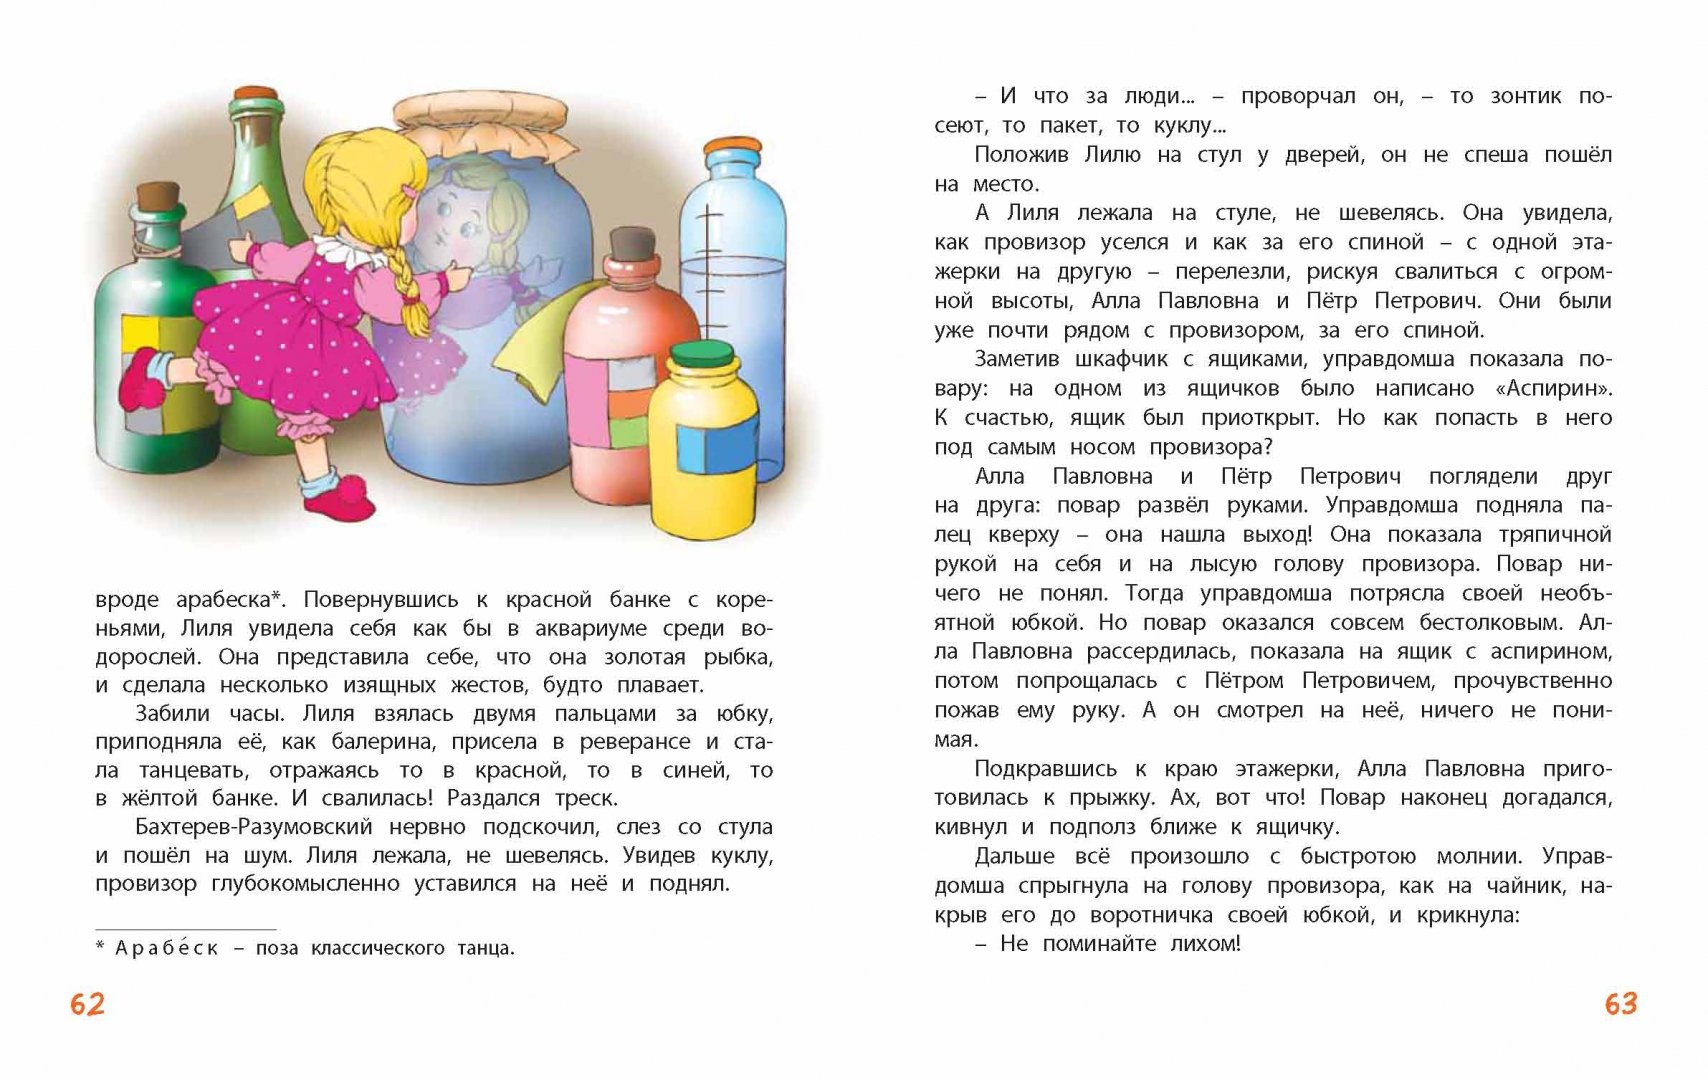 Иллюстрация 8 из 26 для Кукольная комедия - Виткович, Ягдфельд | Лабиринт - книги. Источник: Лабиринт